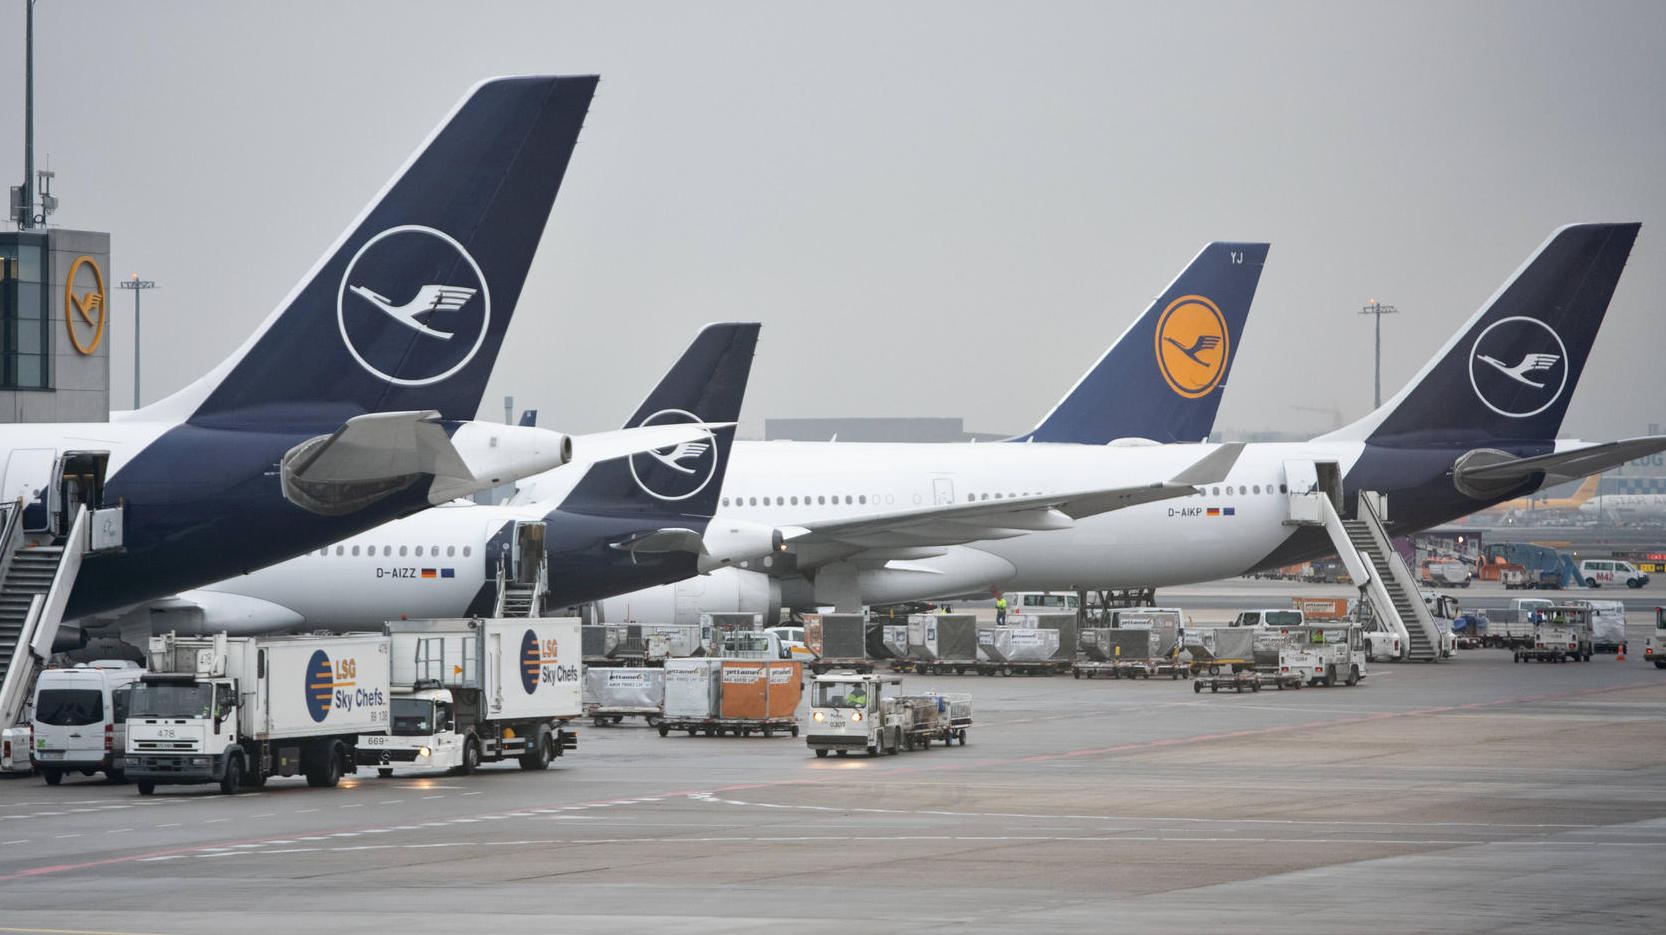 "عمل تخريبي مستهدف": تعليق الإقلاع والهبوط في مطار فرانكفورت